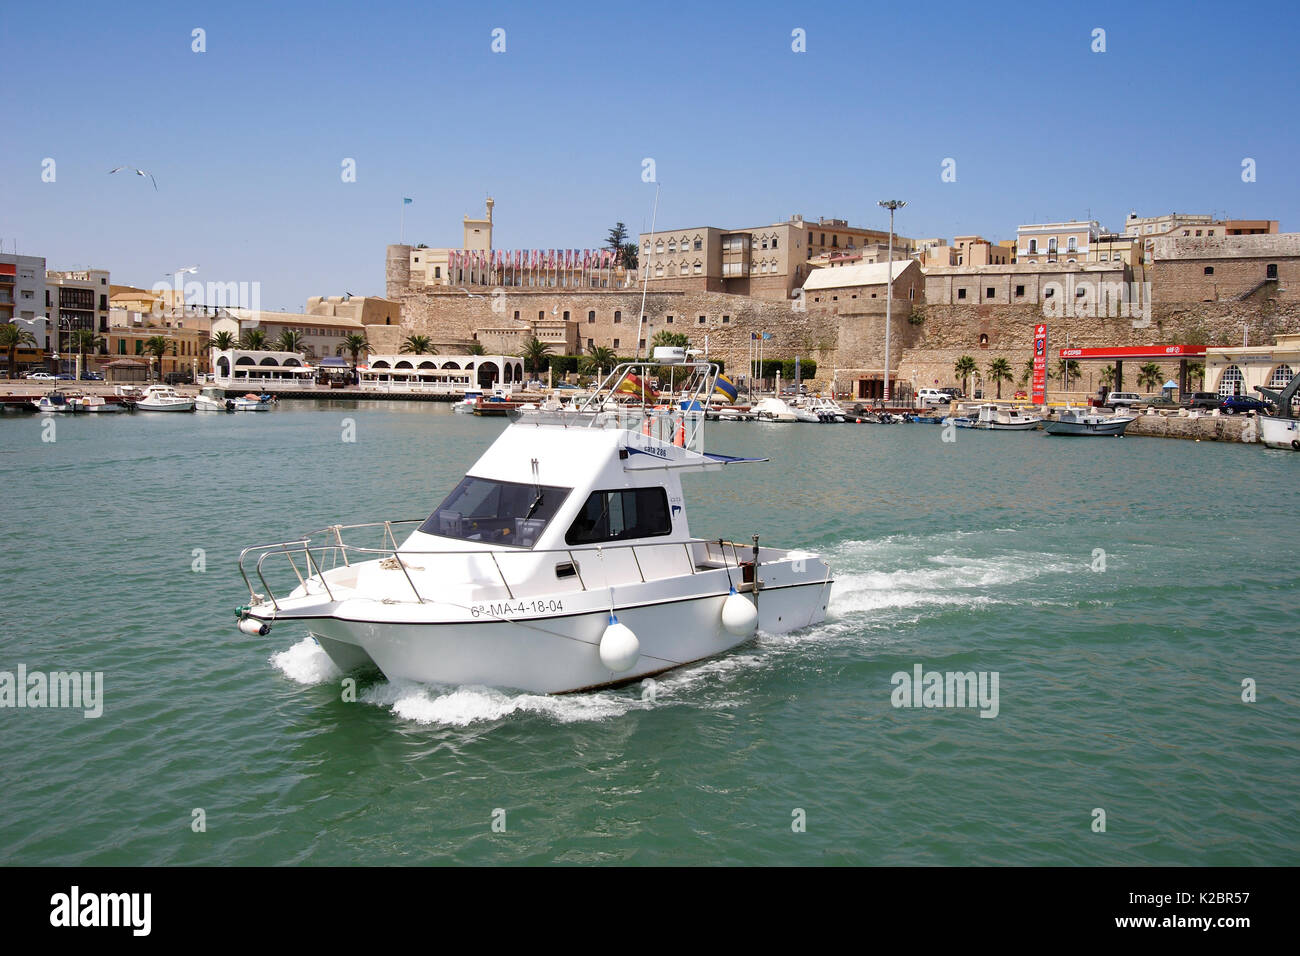 Il motoscafo che lascia il porto di Melilla, Spagna. Giugno 2005. Tutti i non-usi editoriali deve essere eliminato singolarmente. Foto Stock